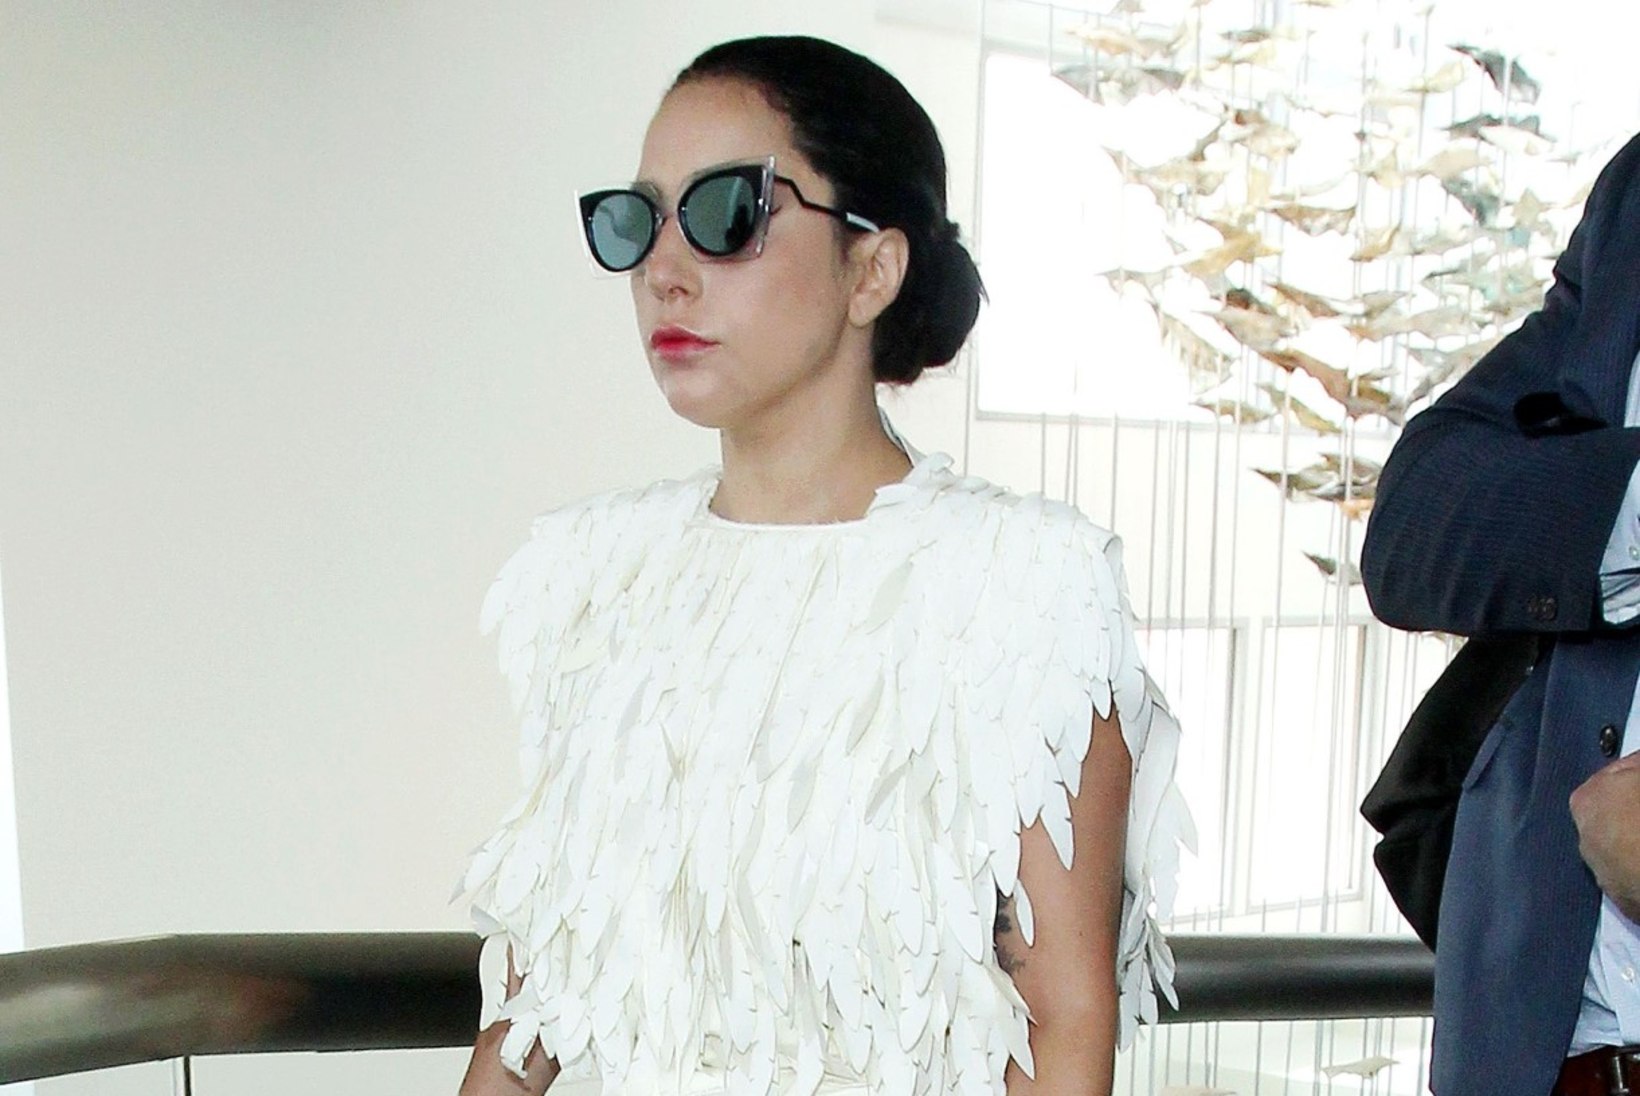 FOTOD | Tagasi normaalsusesse: Lady Gaga kandis ka lihtsureliku selga passivat kleiti 